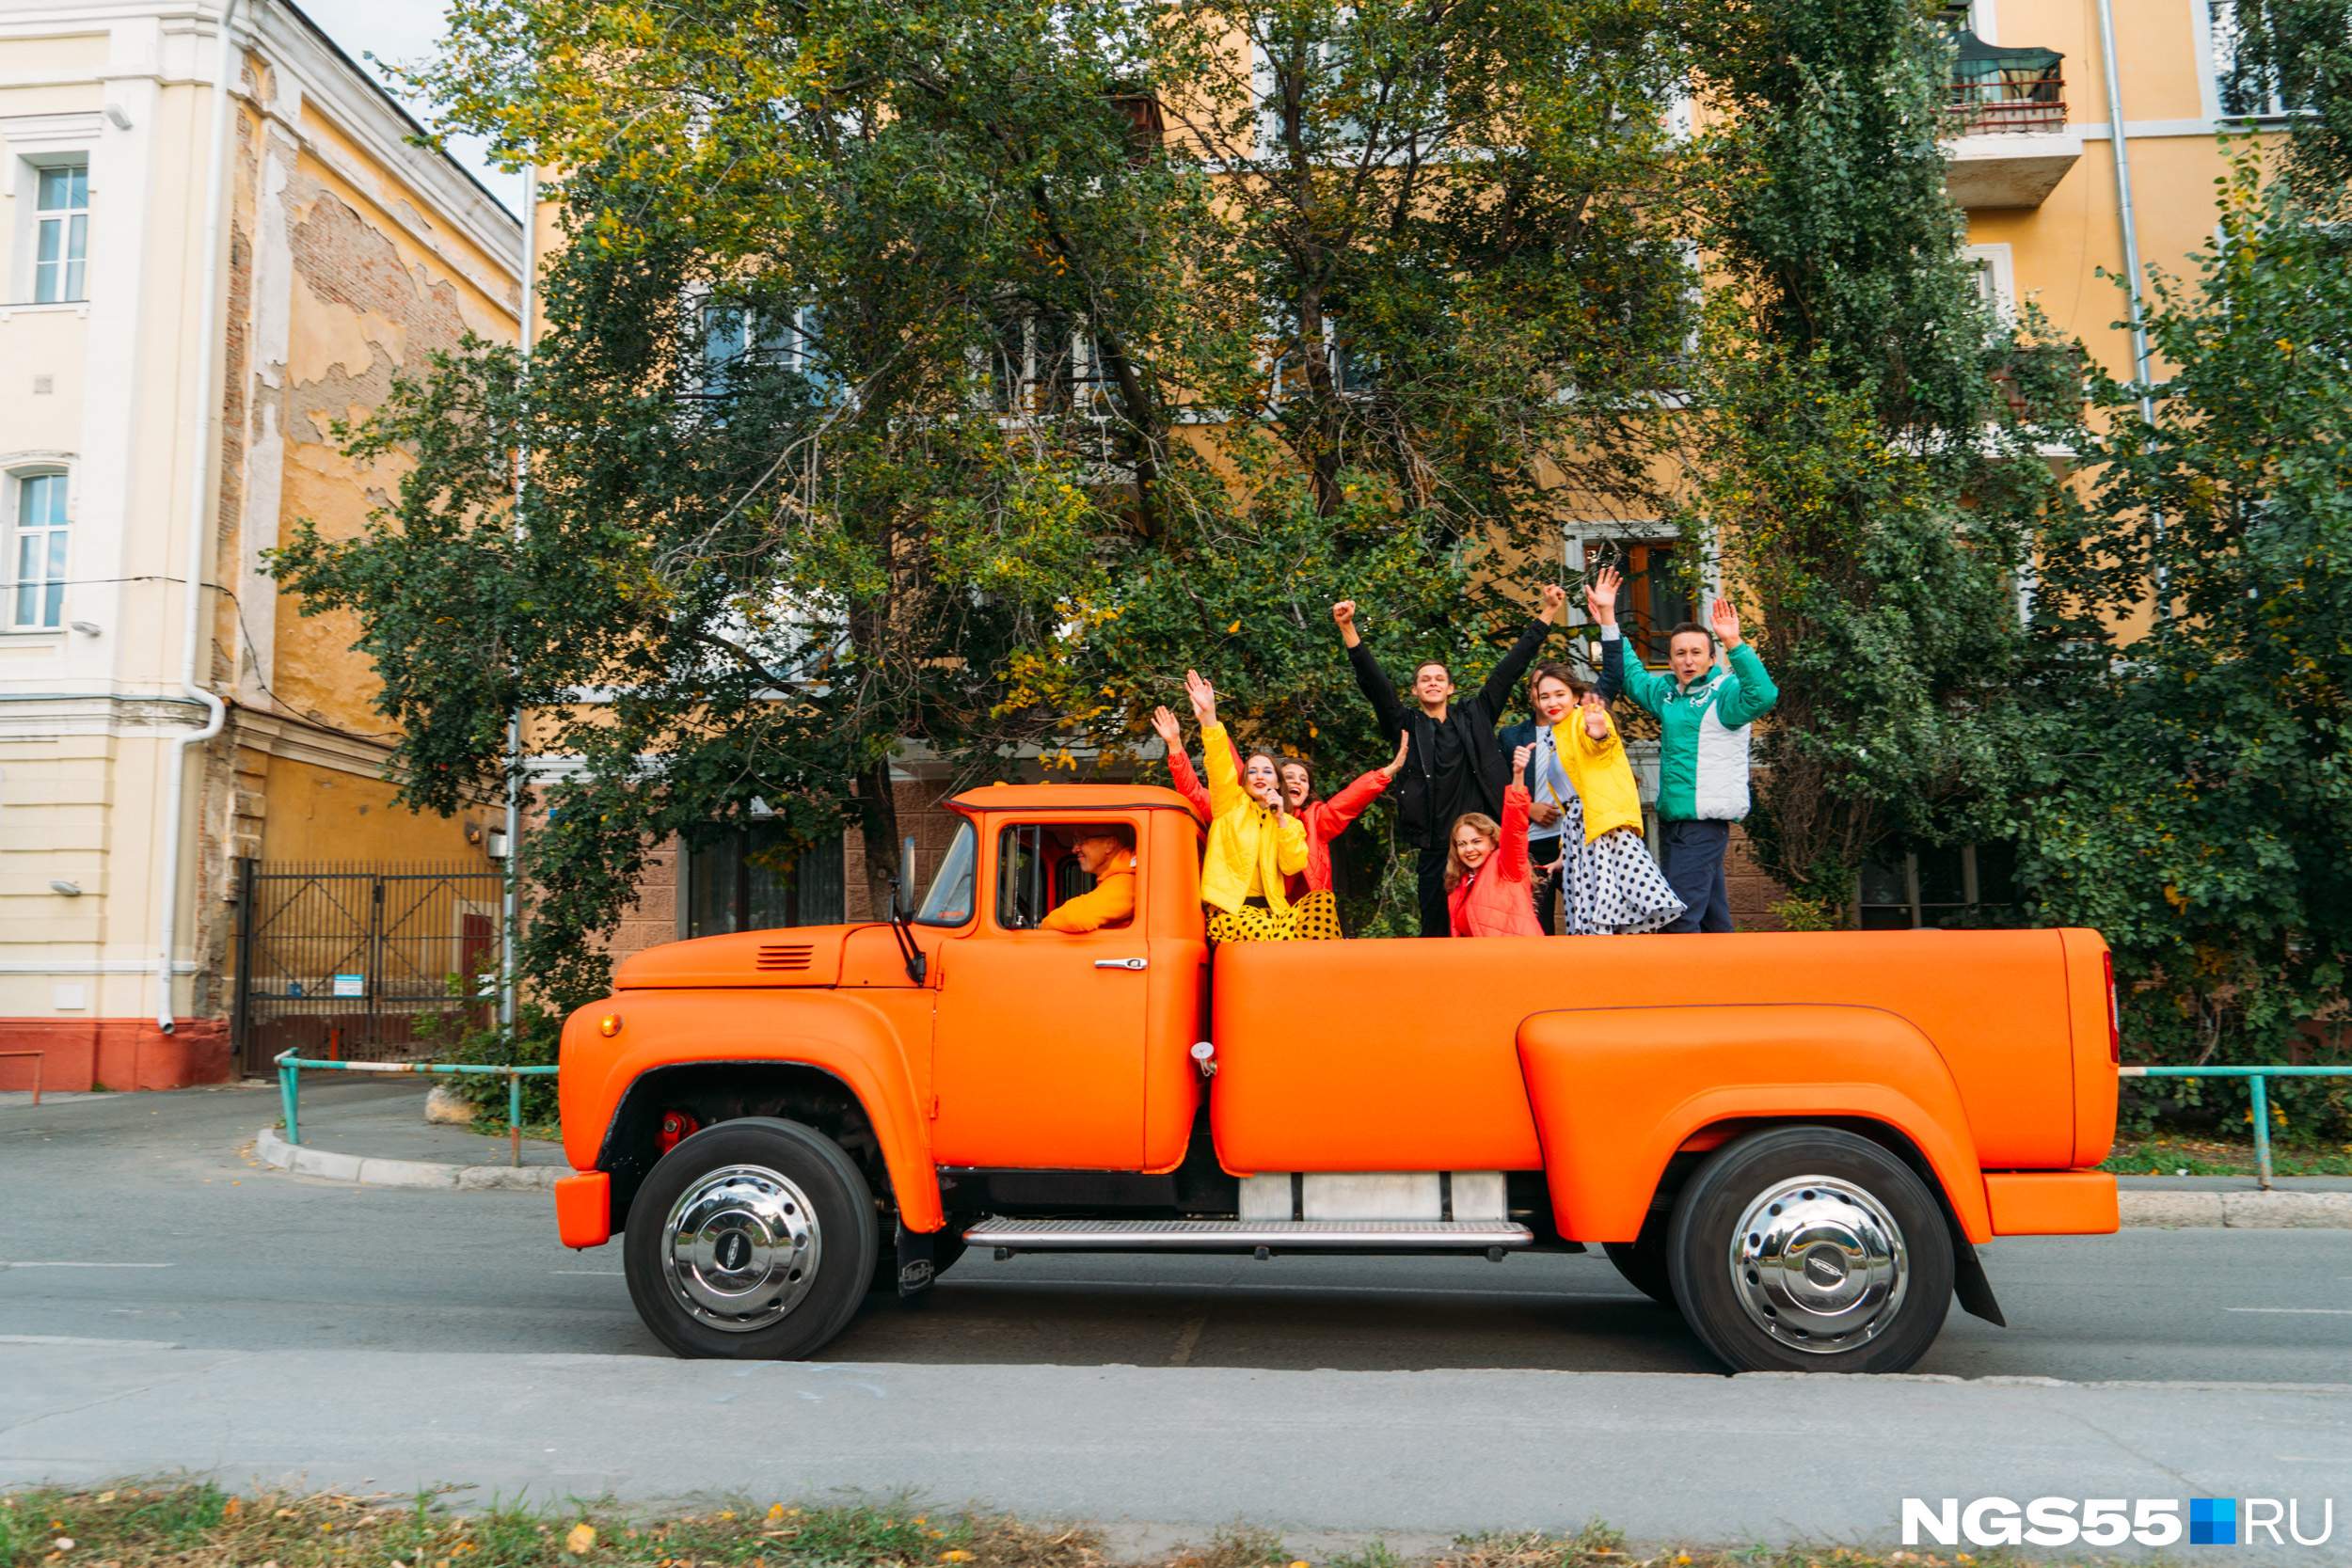 Бизмесмен Дмитрий Карев снова выбрался на улицы города в своем оранжевом ЗИЛе, а в кузове у него сидели очень веселые люди, которые поздравляли всех с праздником